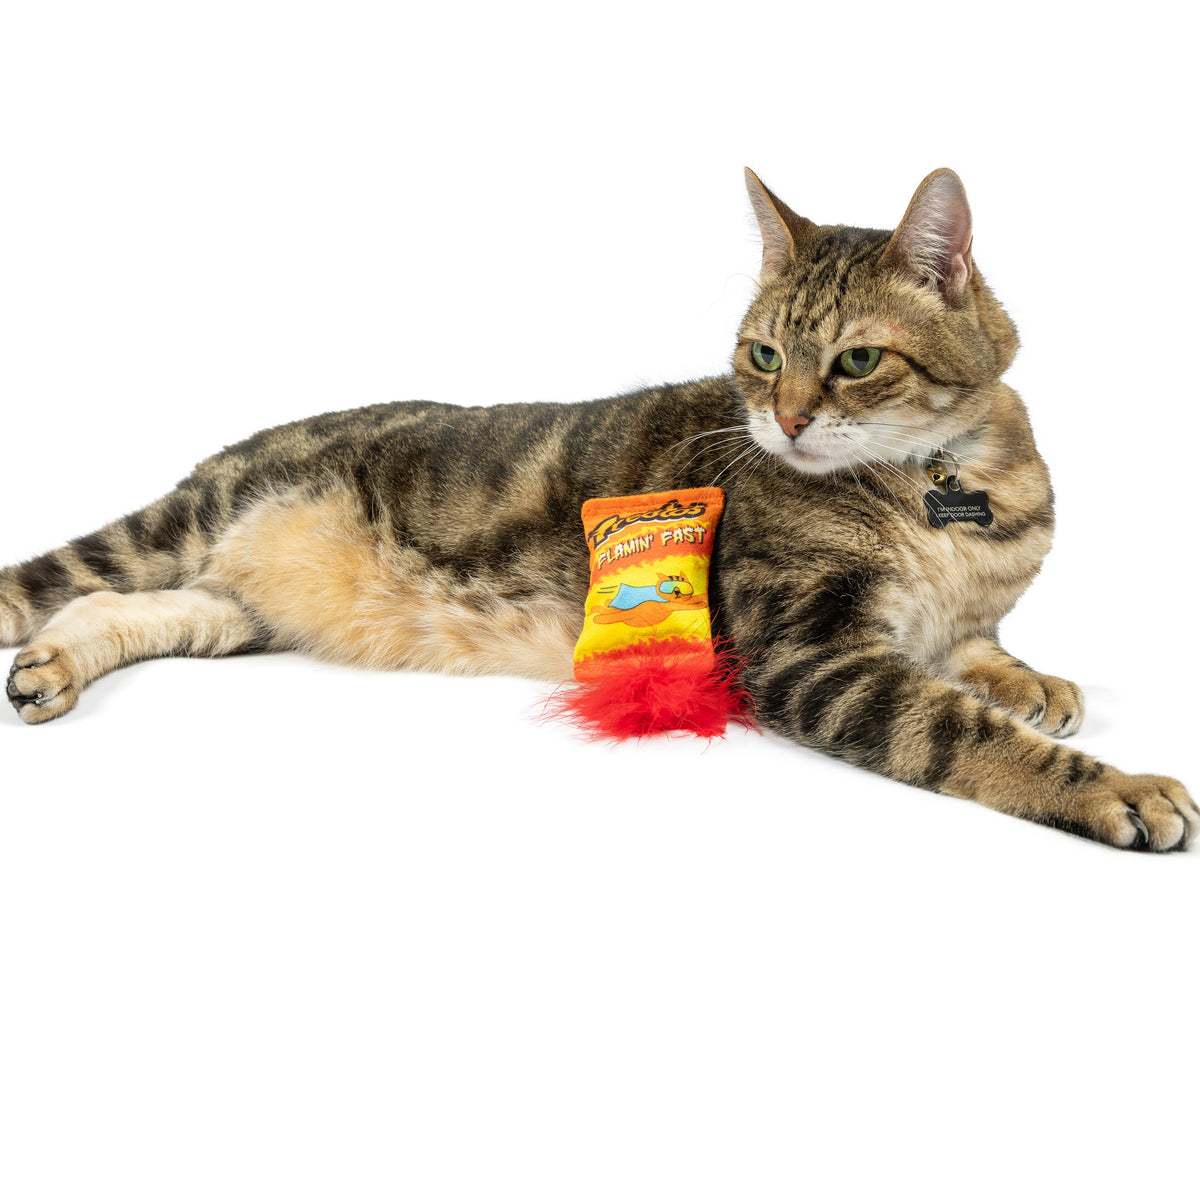 Treatos Snacks Cat Toy